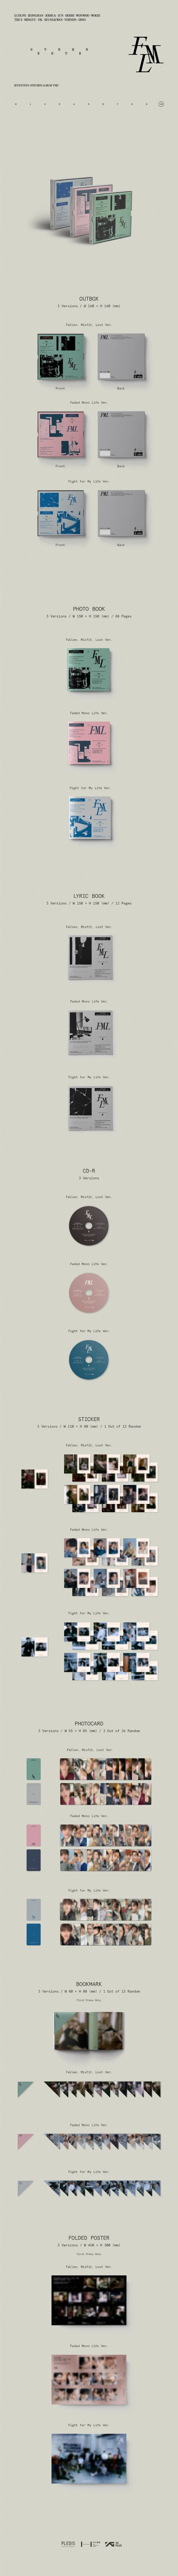 SEVENTEEN - 10th Mini Album FML Infographic